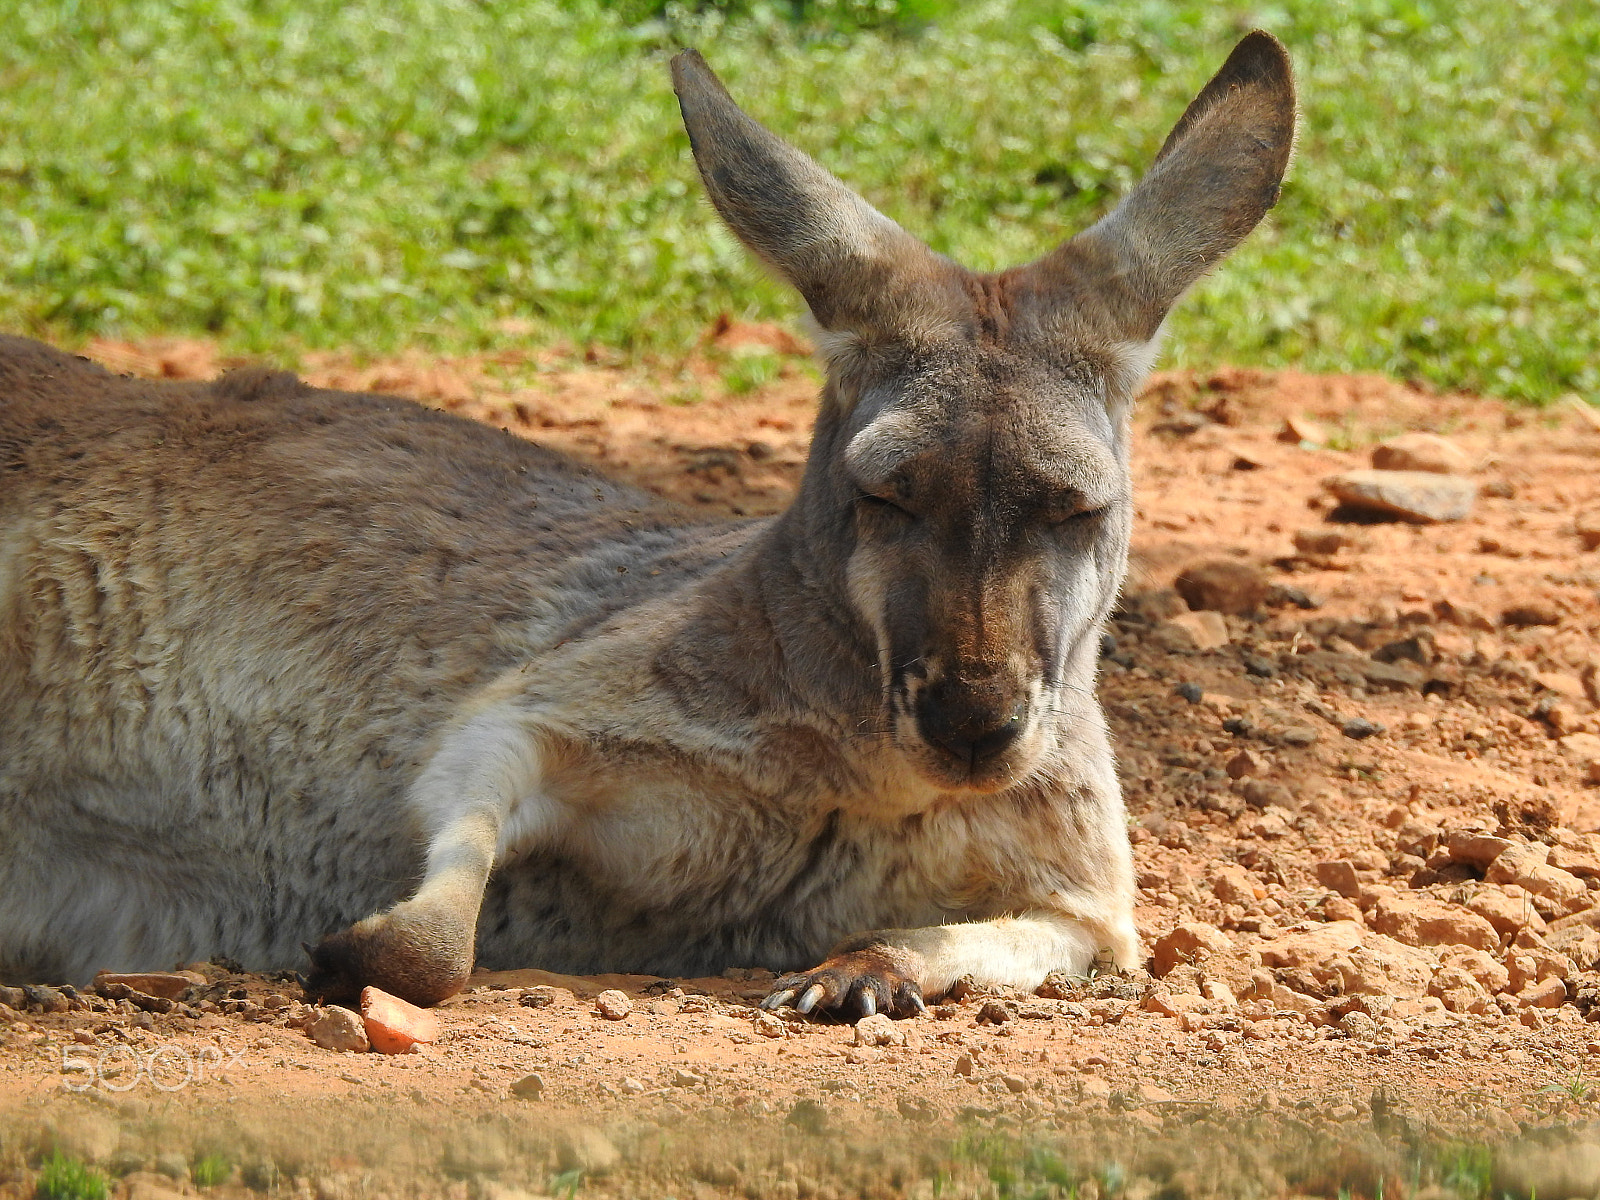 Nikon COOLPIX P900s sample photo. A resting kangaroo photography